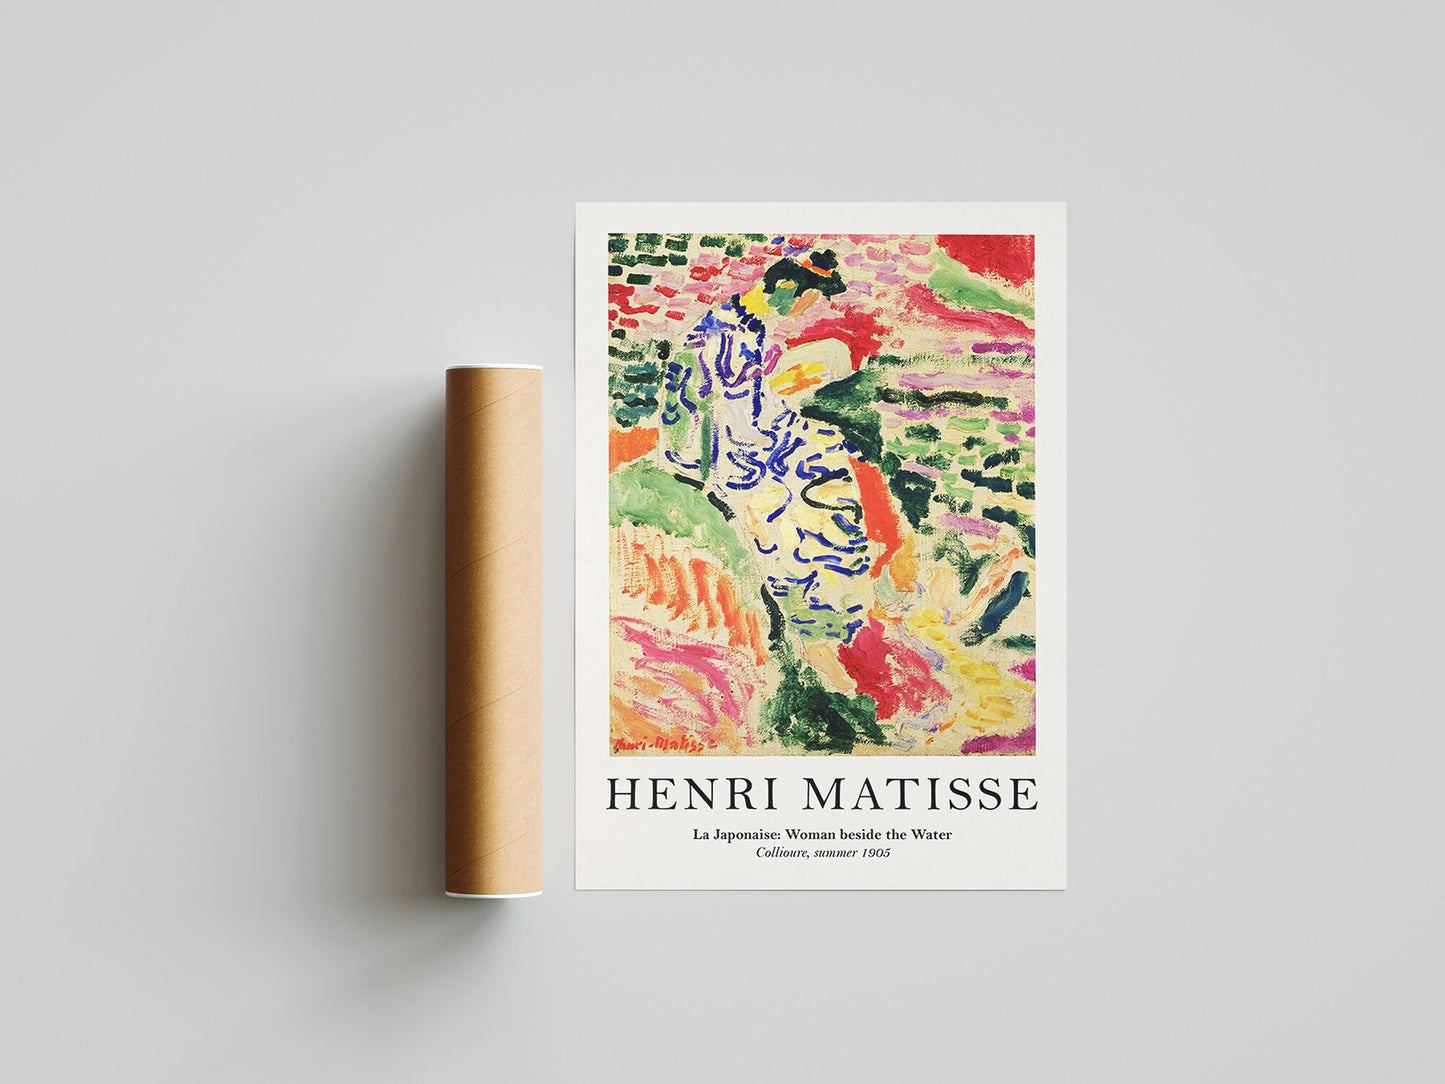 La Japonaise by Henri Matisse - Exhibition Poster III